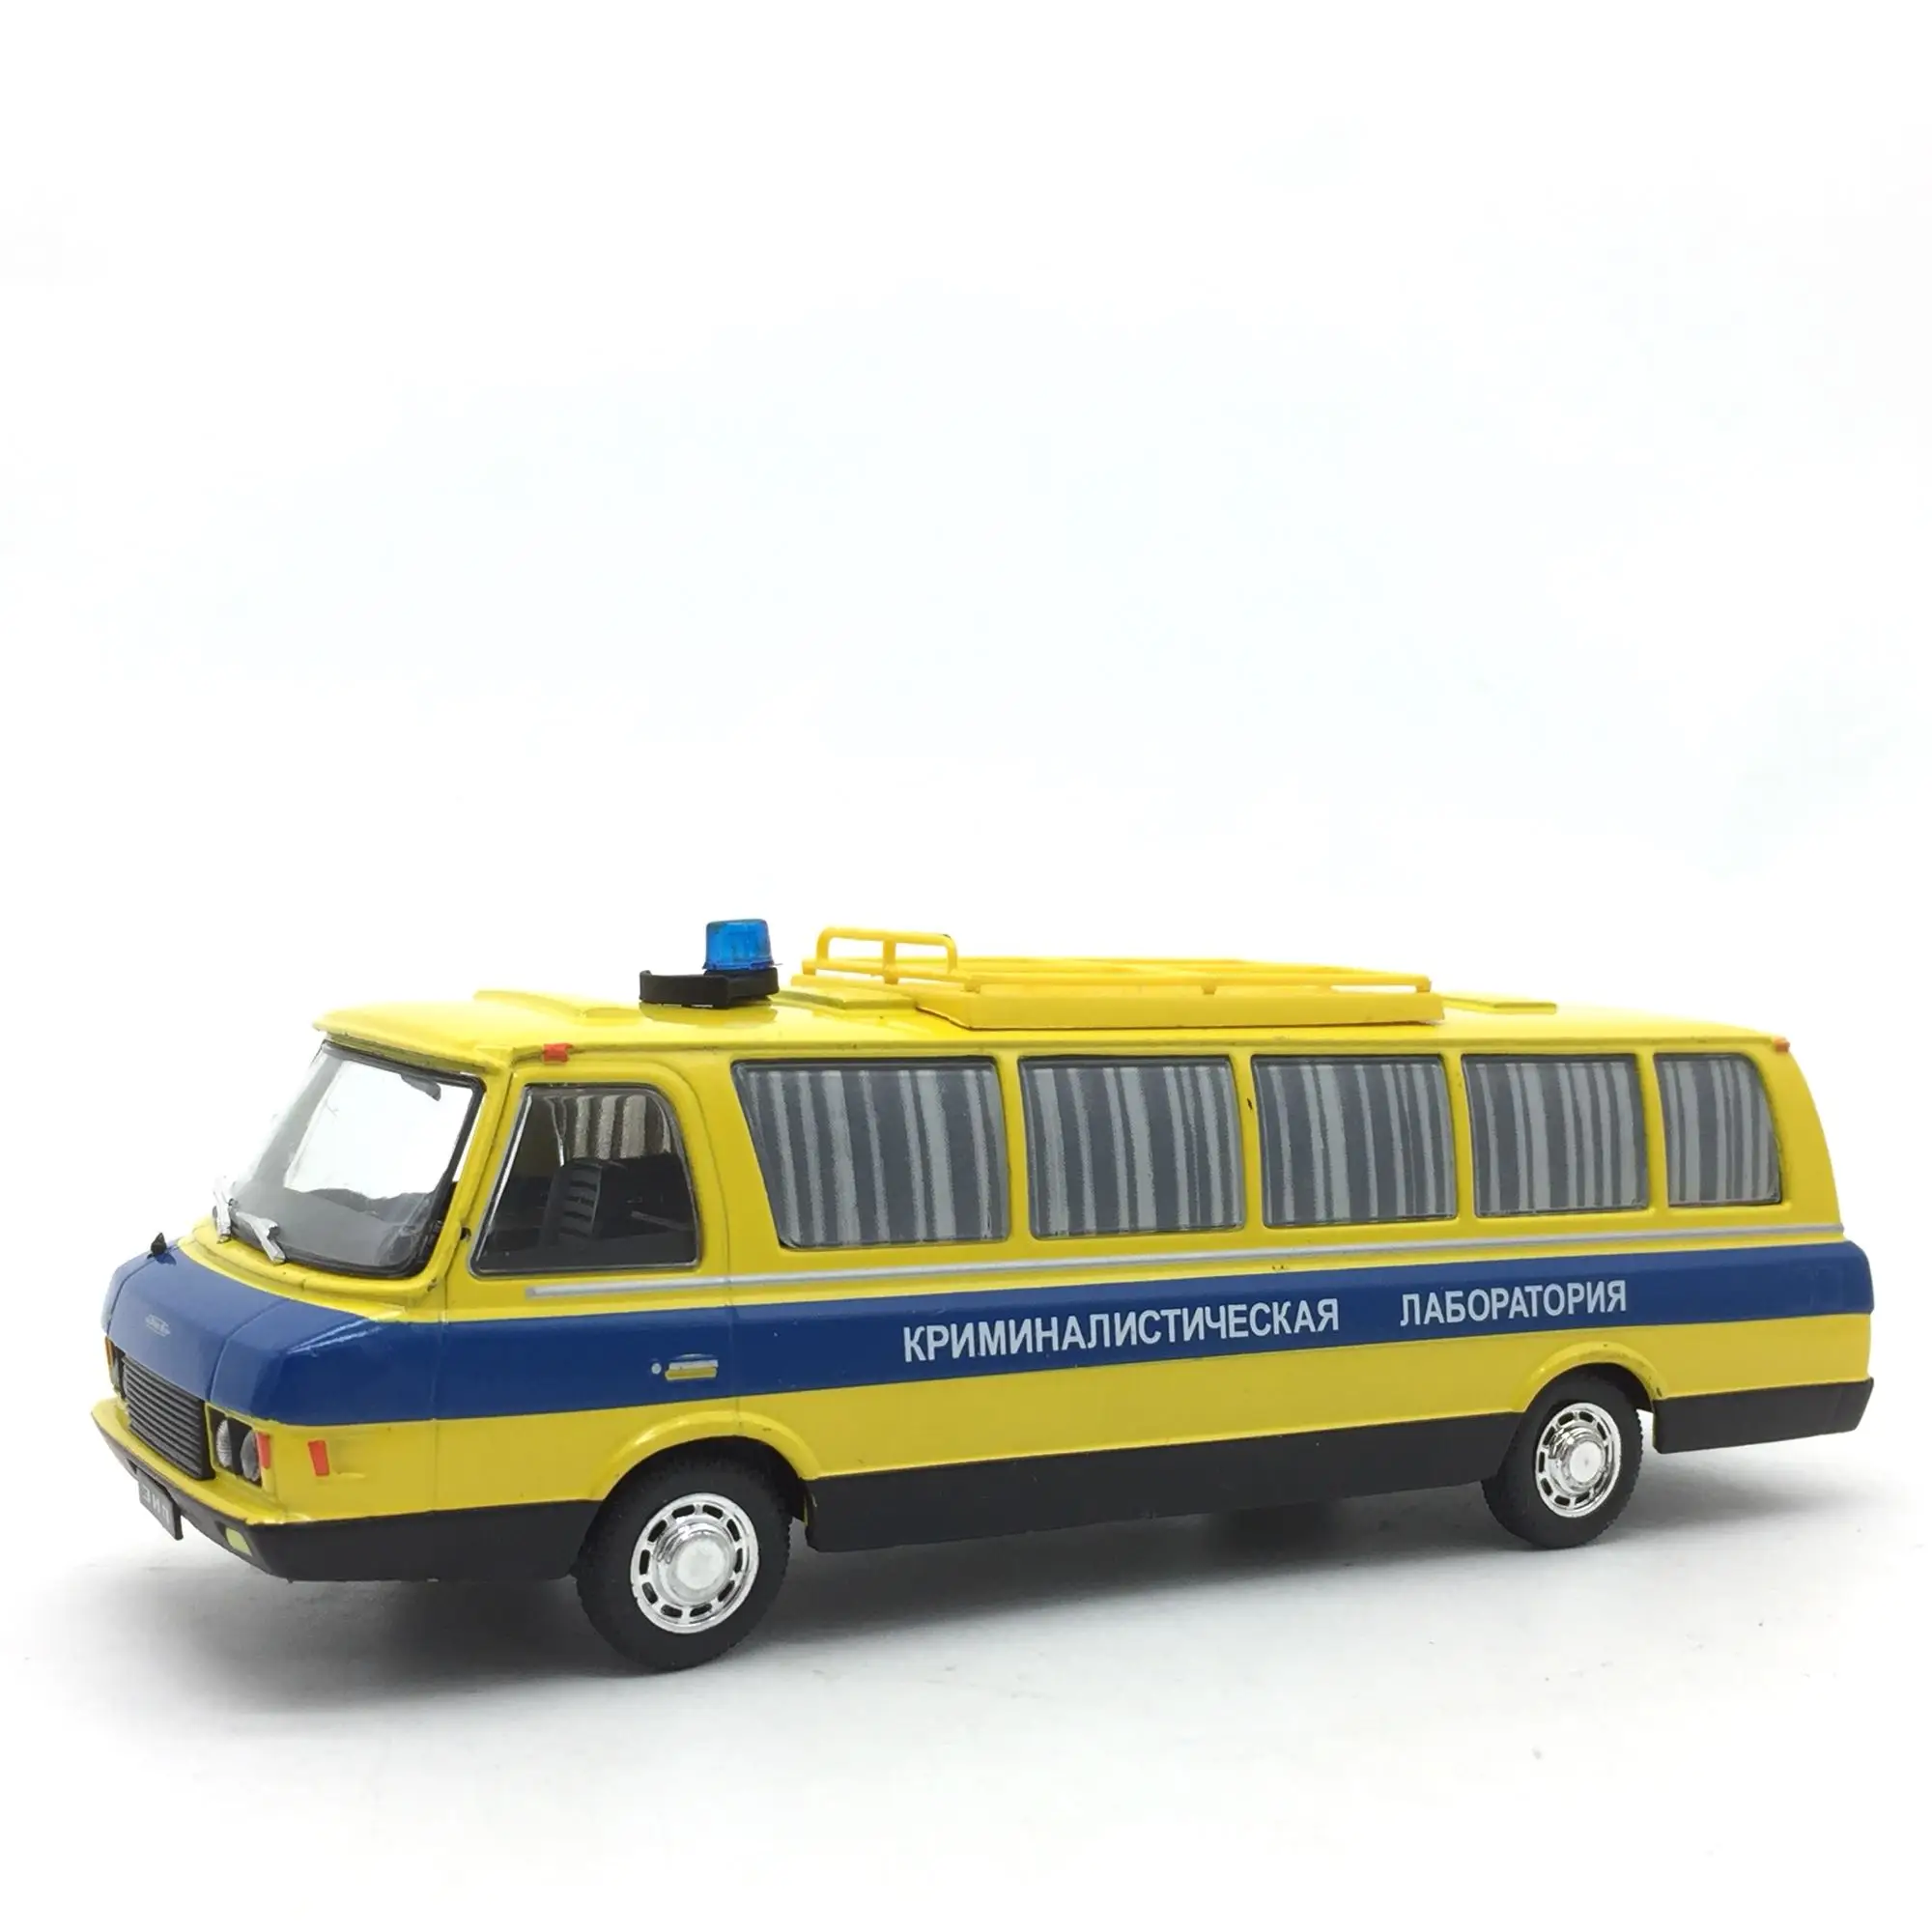 1:43 Восточно-Европейский совет литой автобус литой автомобиль Длина модели 16 см - Цвет: Цвет: желтый